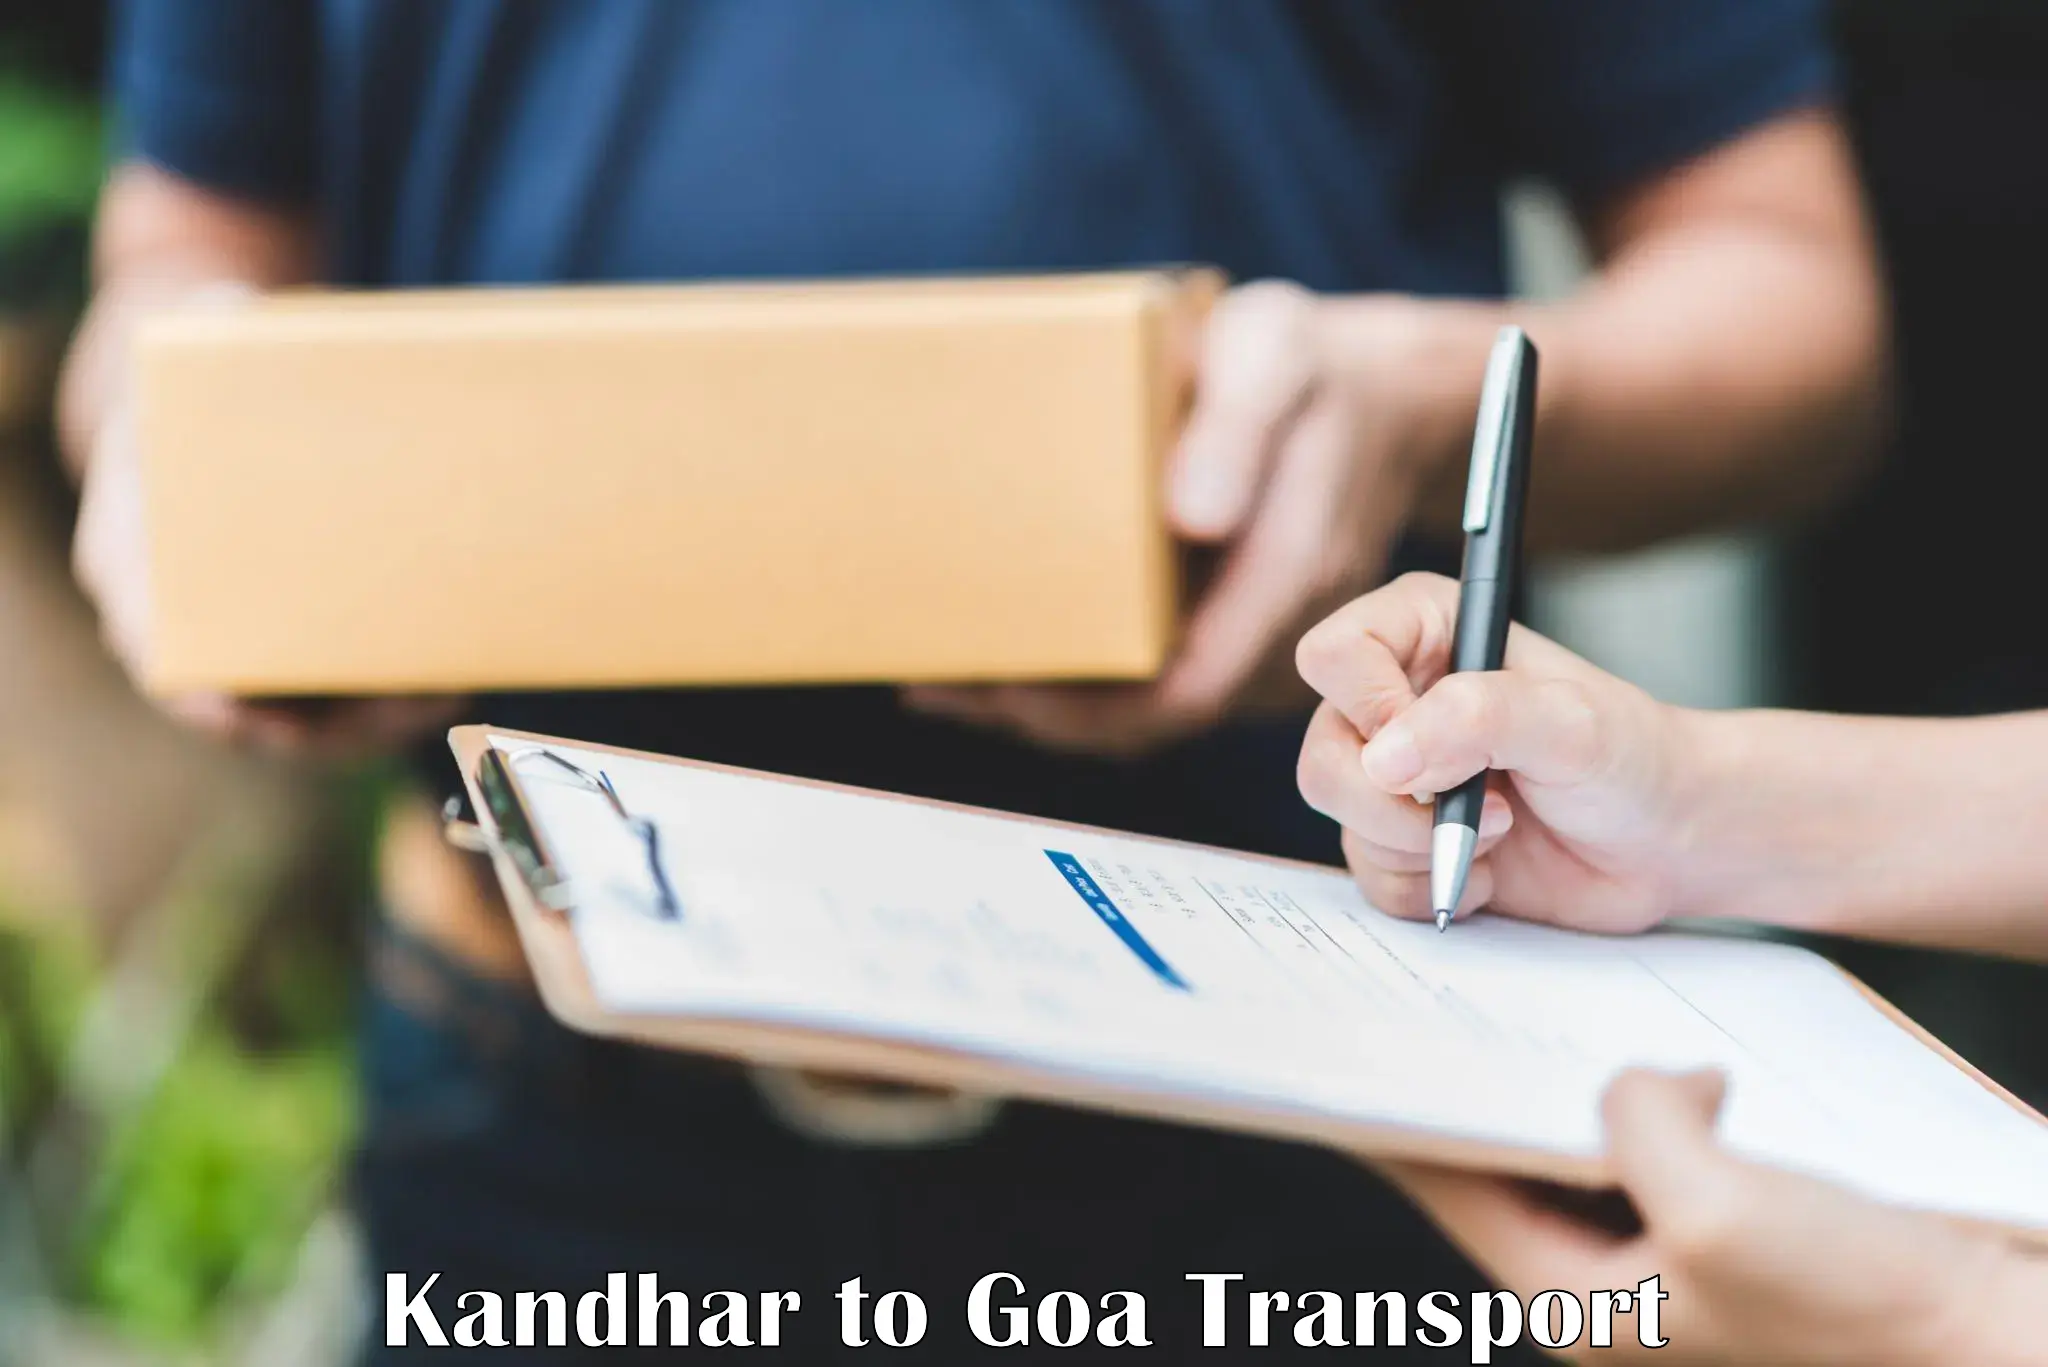 Truck transport companies in India Kandhar to Panjim